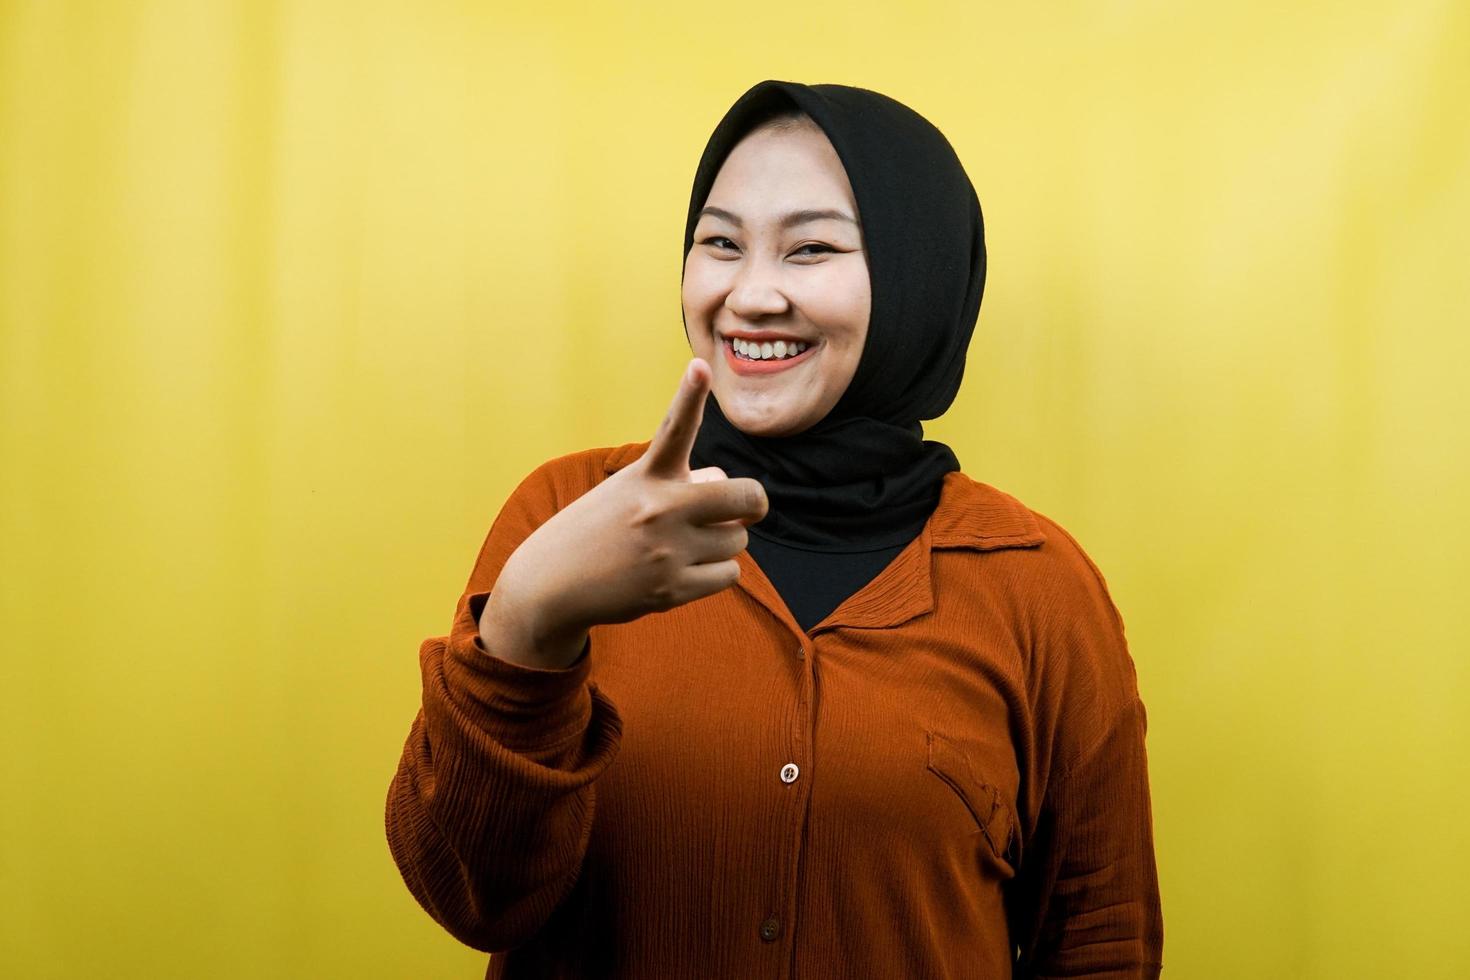 bella giovane donna musulmana asiatica con le mani che puntano alla telecamera, indicando il pubblico, indicando il cliente, sorridendo fiducioso e allegro, isolato foto